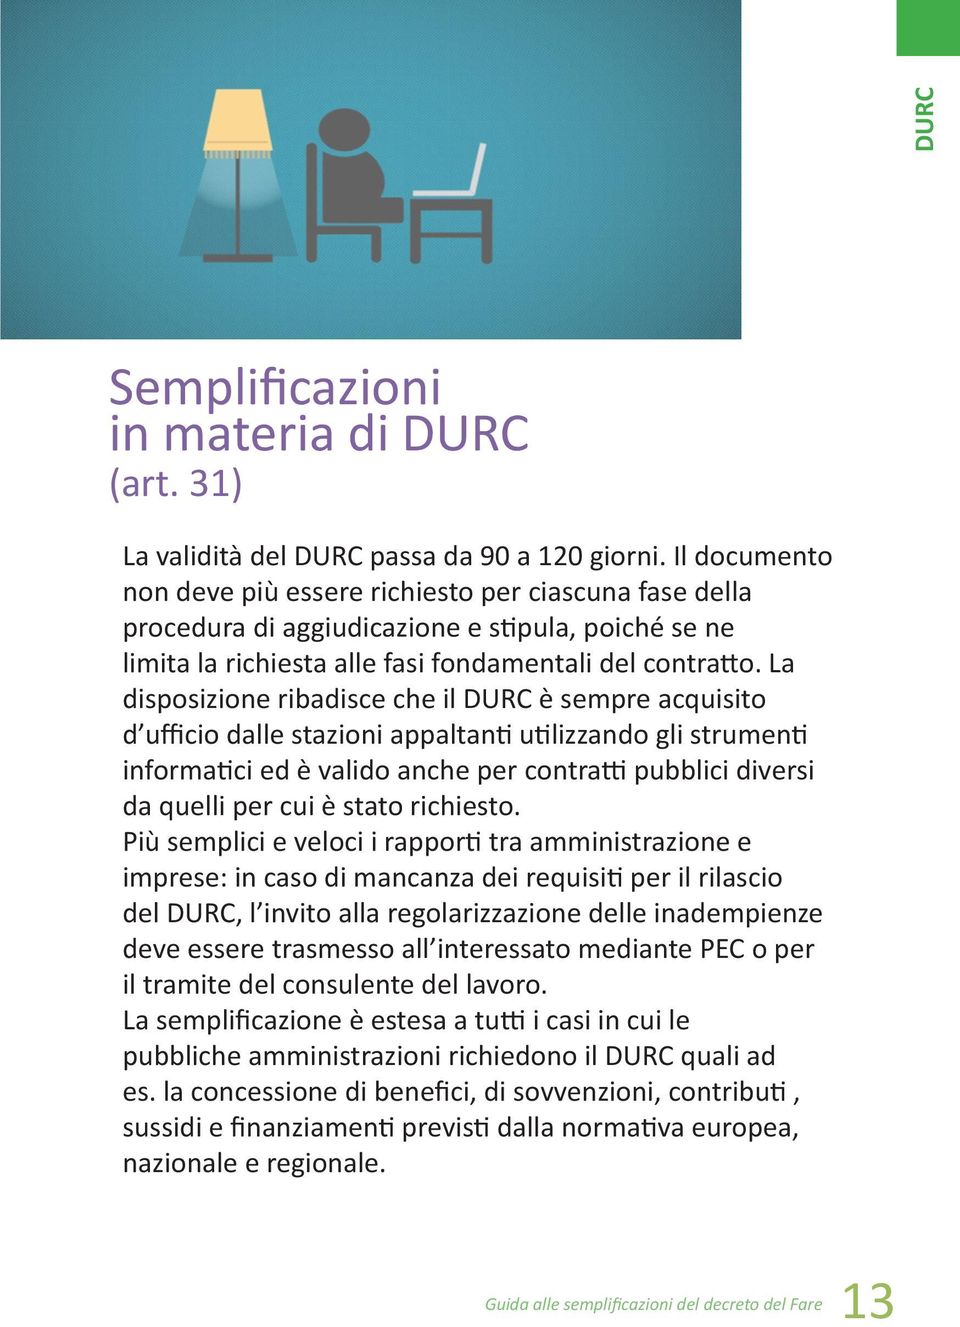 La disposizione ribadisce che il DURC è sempre acquisito d ufficio dalle stazioni appaltanti utilizzando gli strumenti informatici ed è valido anche per contratti pubblici diversi da quelli per cui è